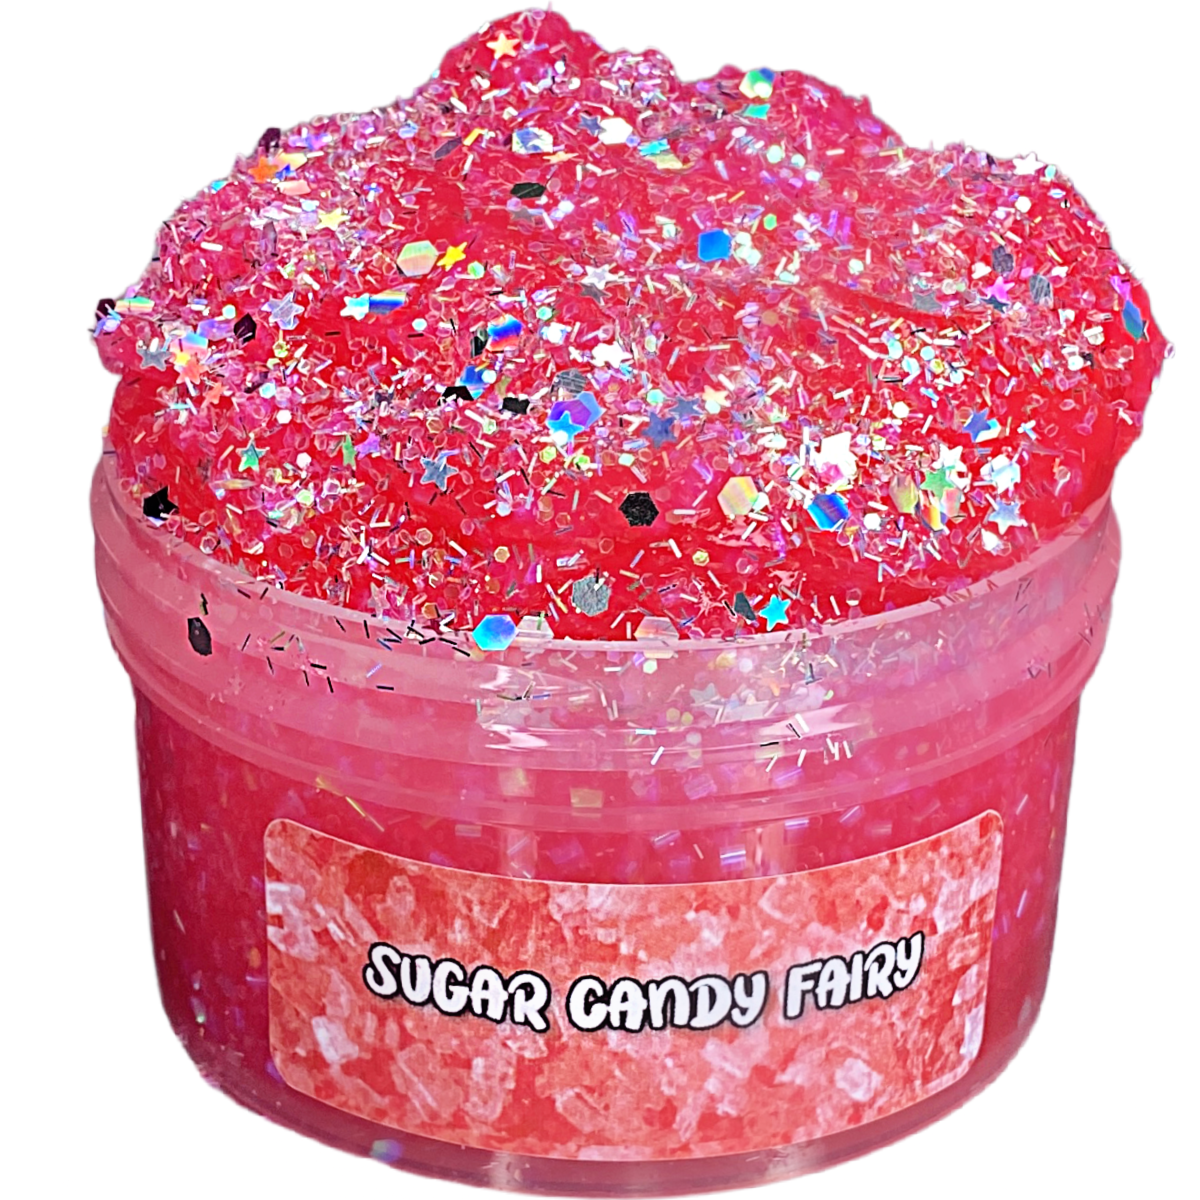 Sugar Candy Fairy Shop Nichole Jacklyne